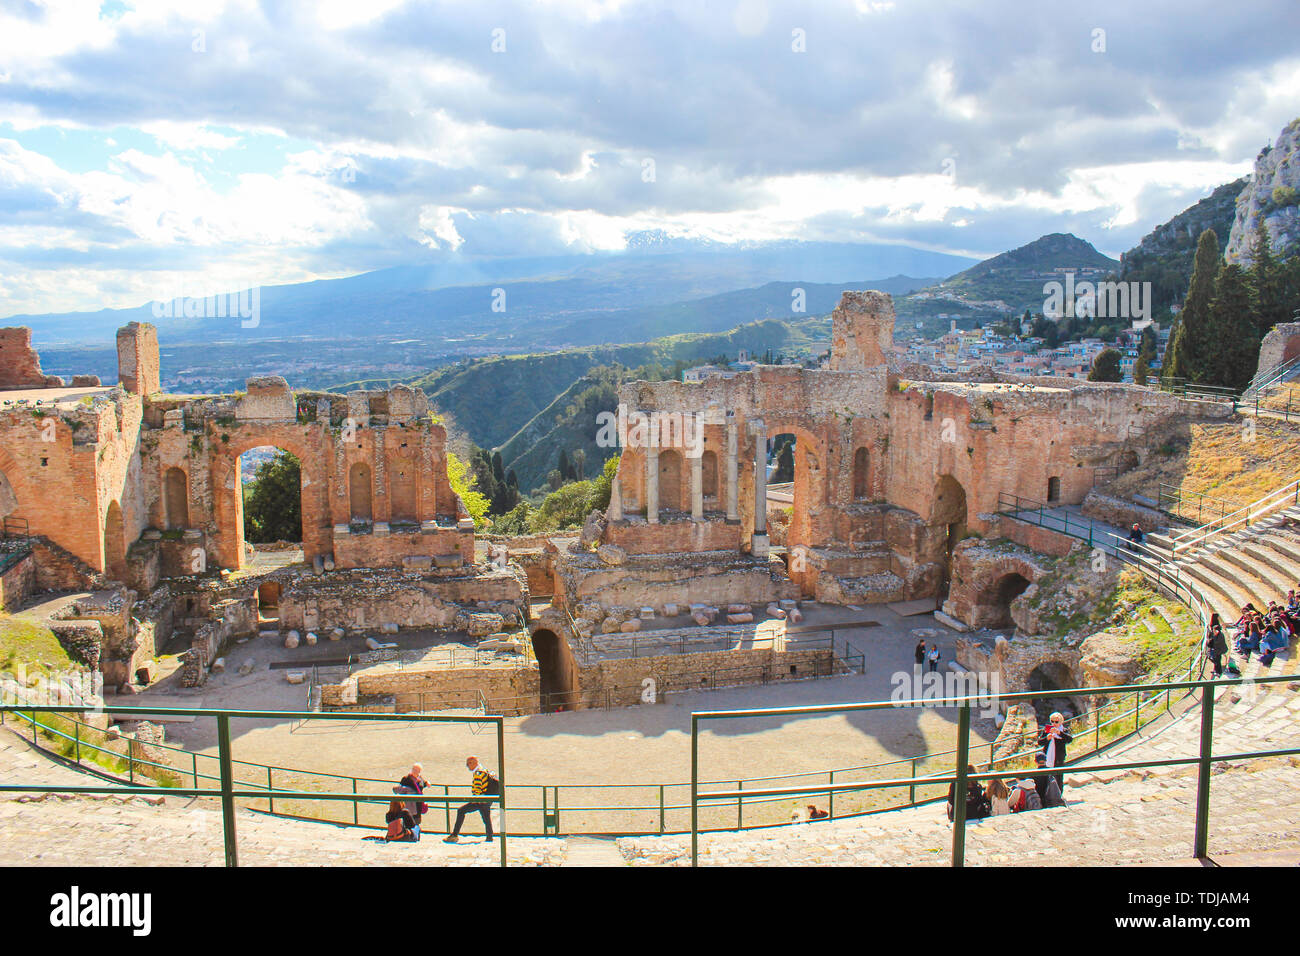 Taormina, Sizilien, Italien - Apr 8 2019: Schöne antike Theater von Taormina. Antike griechische Theater, Ruinen von bedeutenden Sehenswürdigkeiten. Herrliche Aussicht auf den Vulkan Ätna aus dem Auditorium. Stockfoto